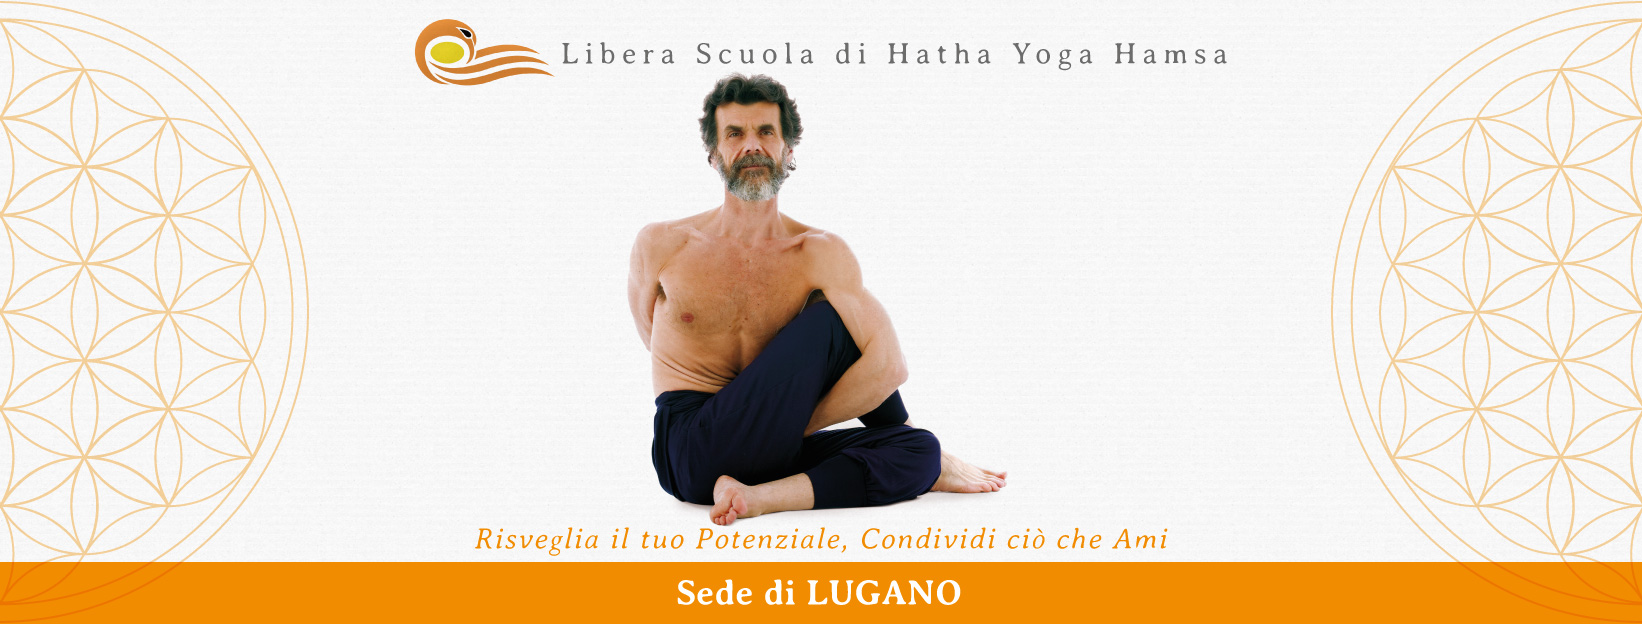 Vai al sito Haṃsa Libera Scuola di Hatha Yoga